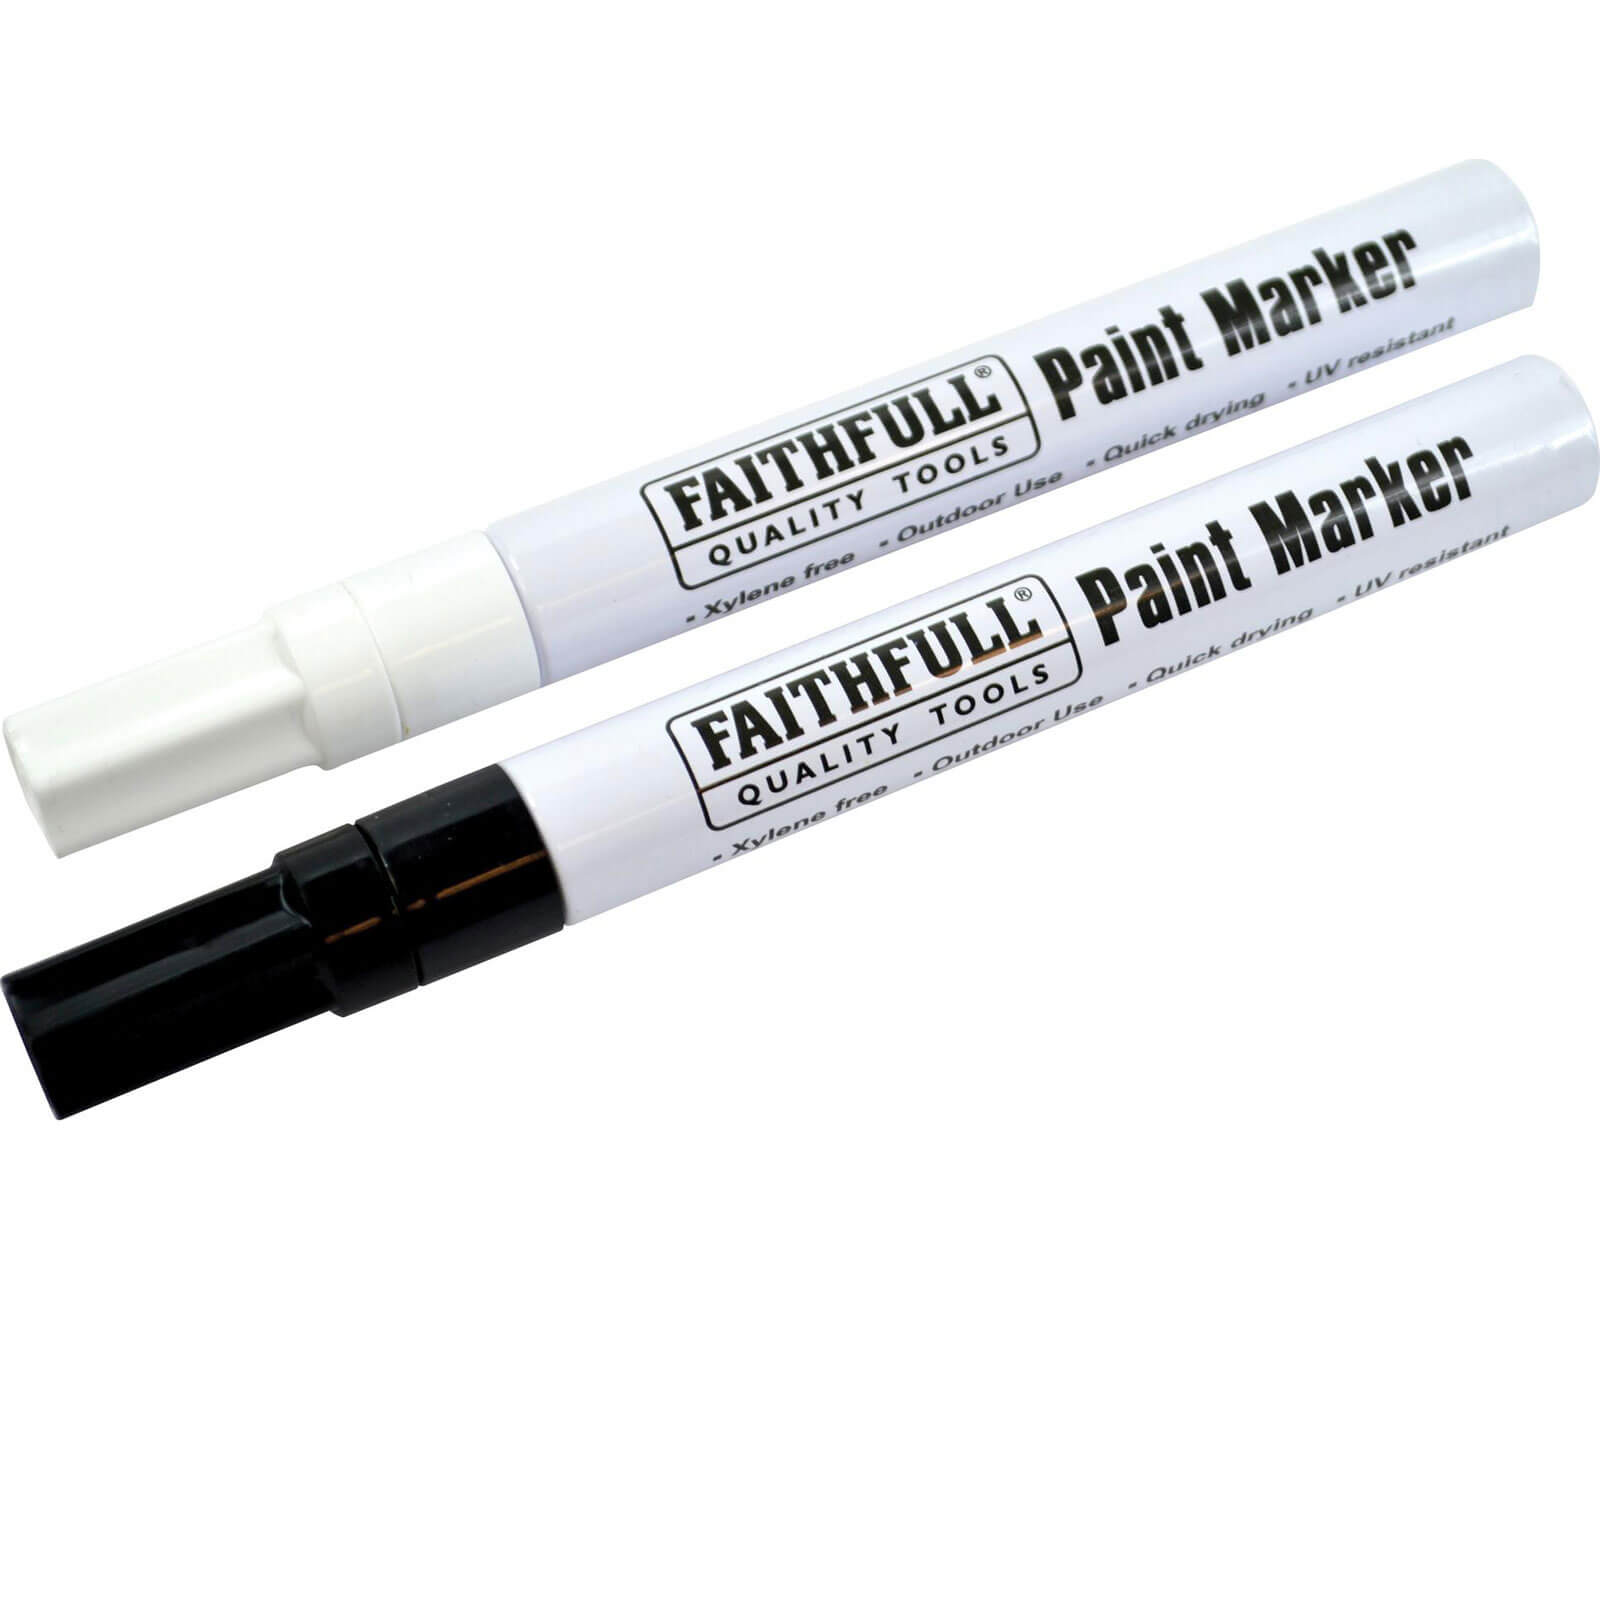 Image of Faithfull Paint Marker Pen Black / White Pack of 2